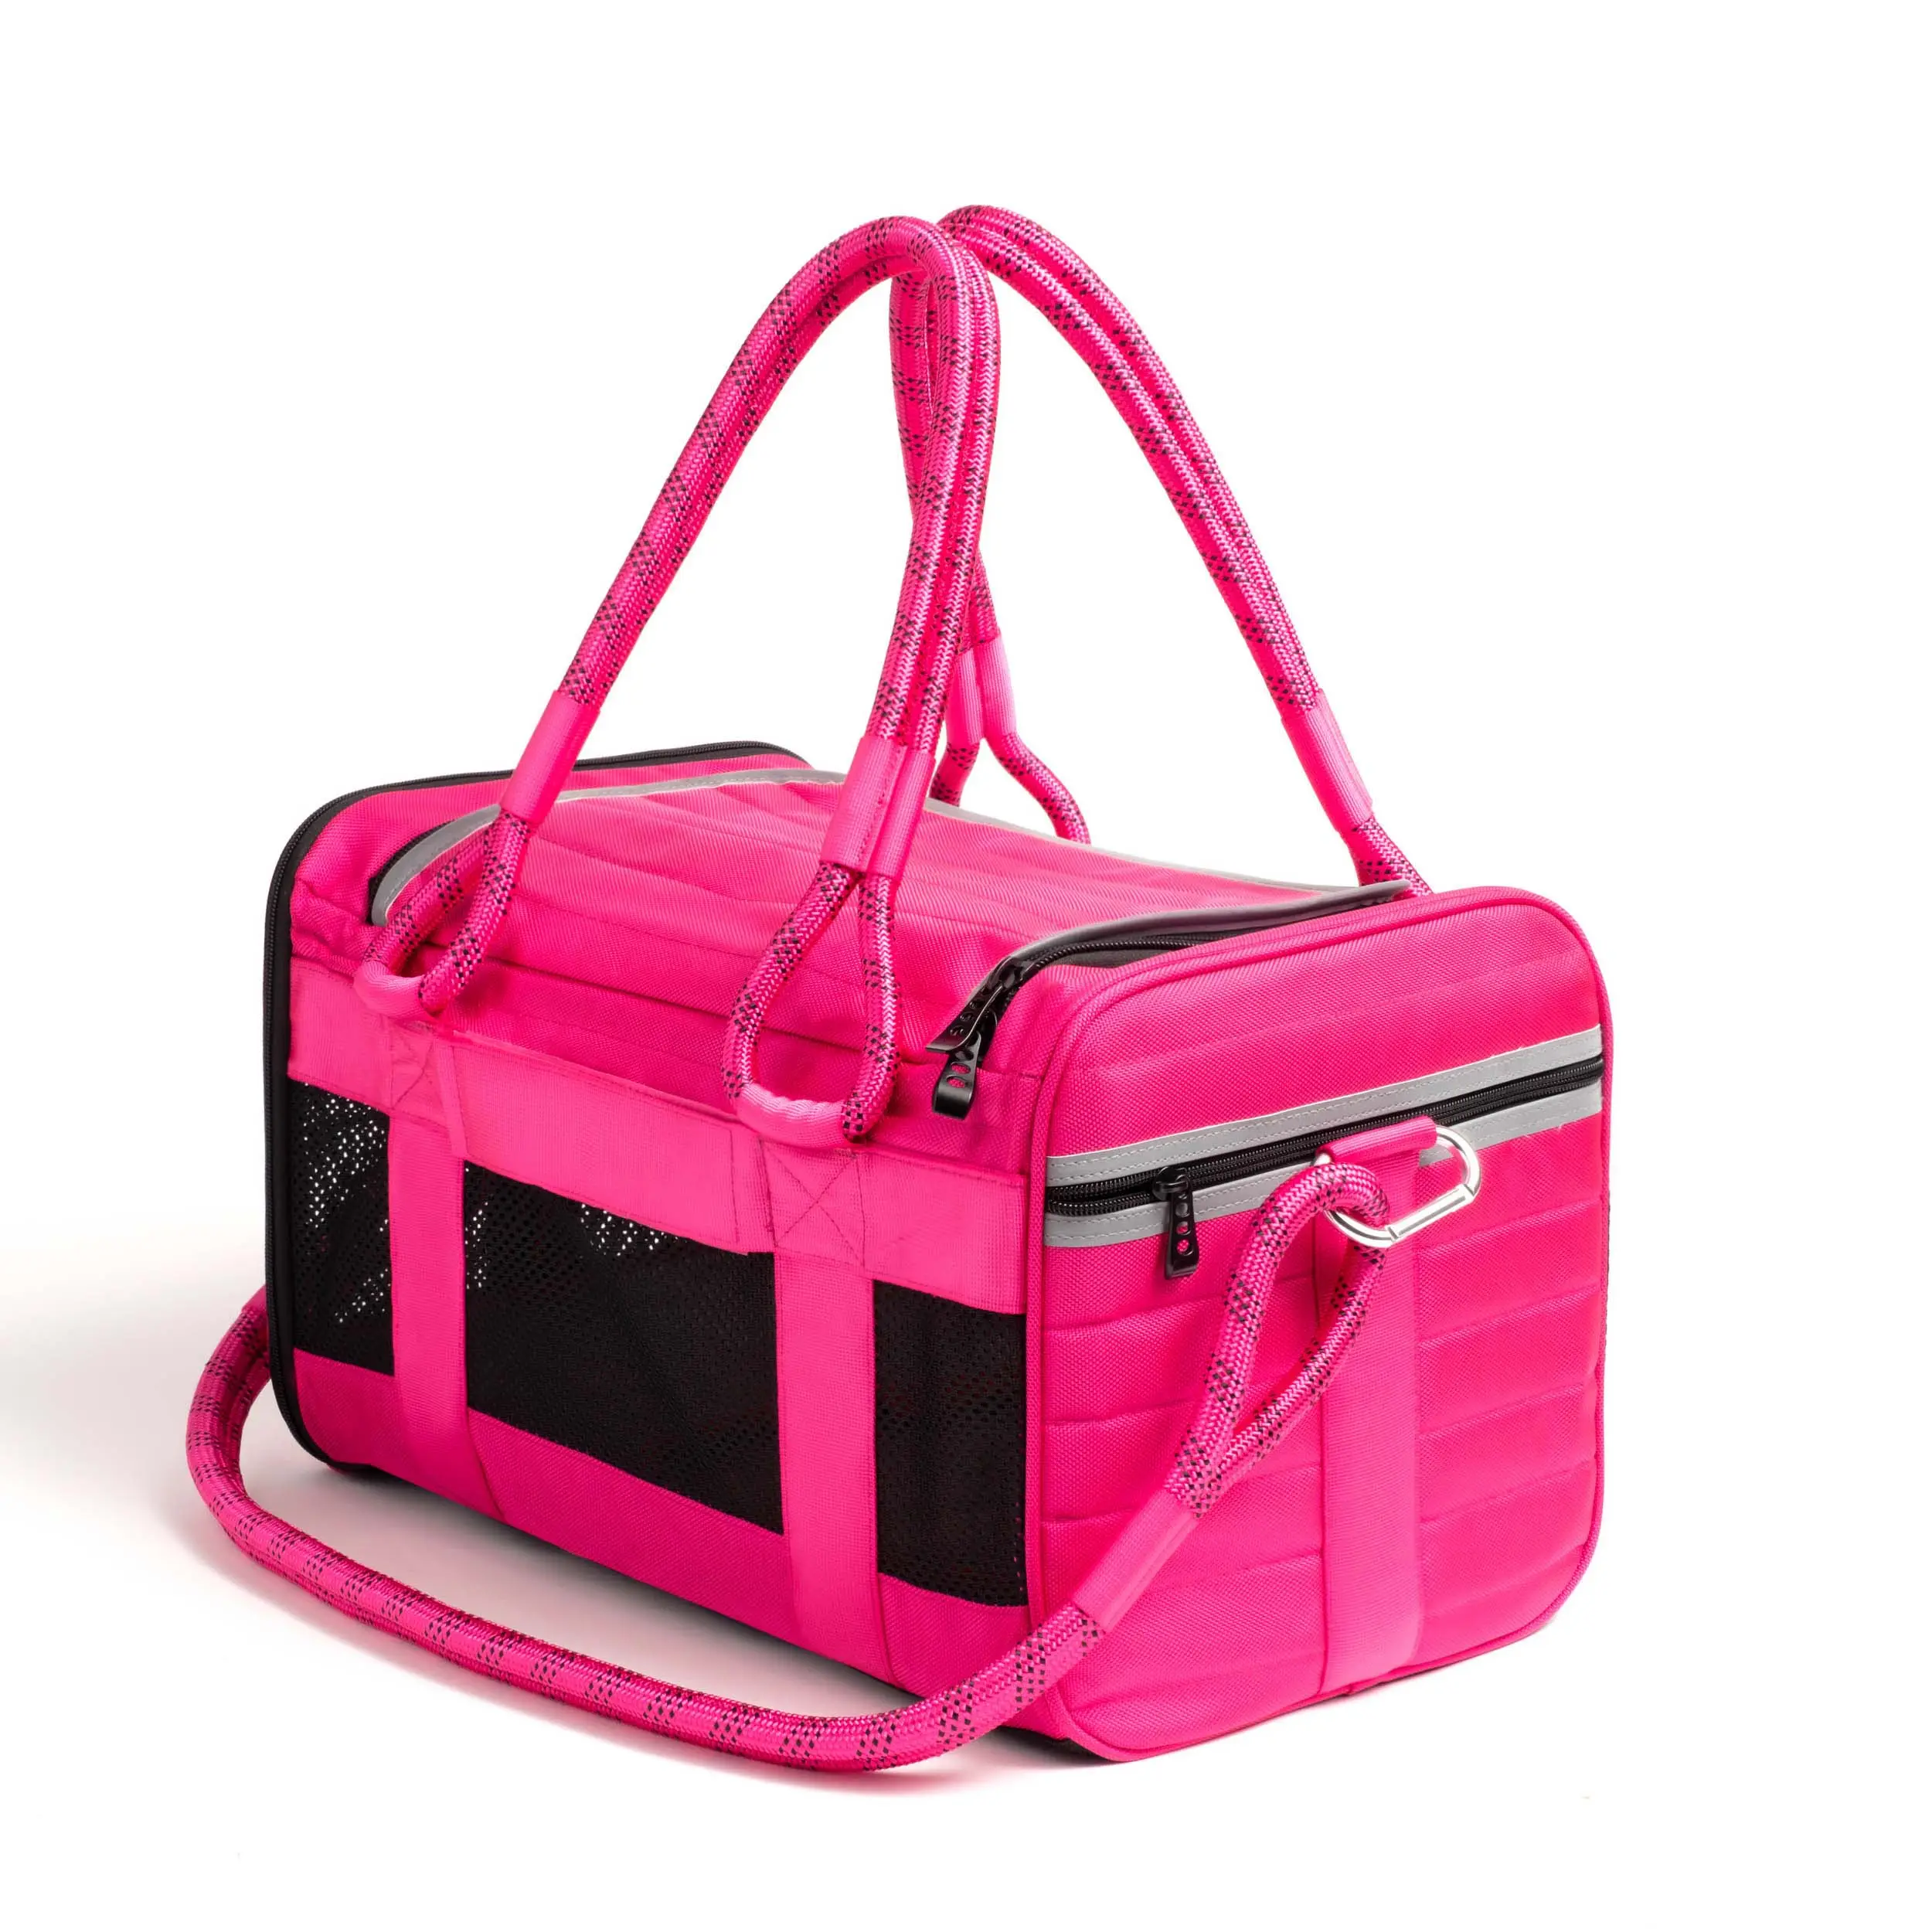 OEM Manufacturer Custom Portable Pet Bag For Dog Travel Case Soft Sided Luxury Pink Duffel Pet Carrier Bag